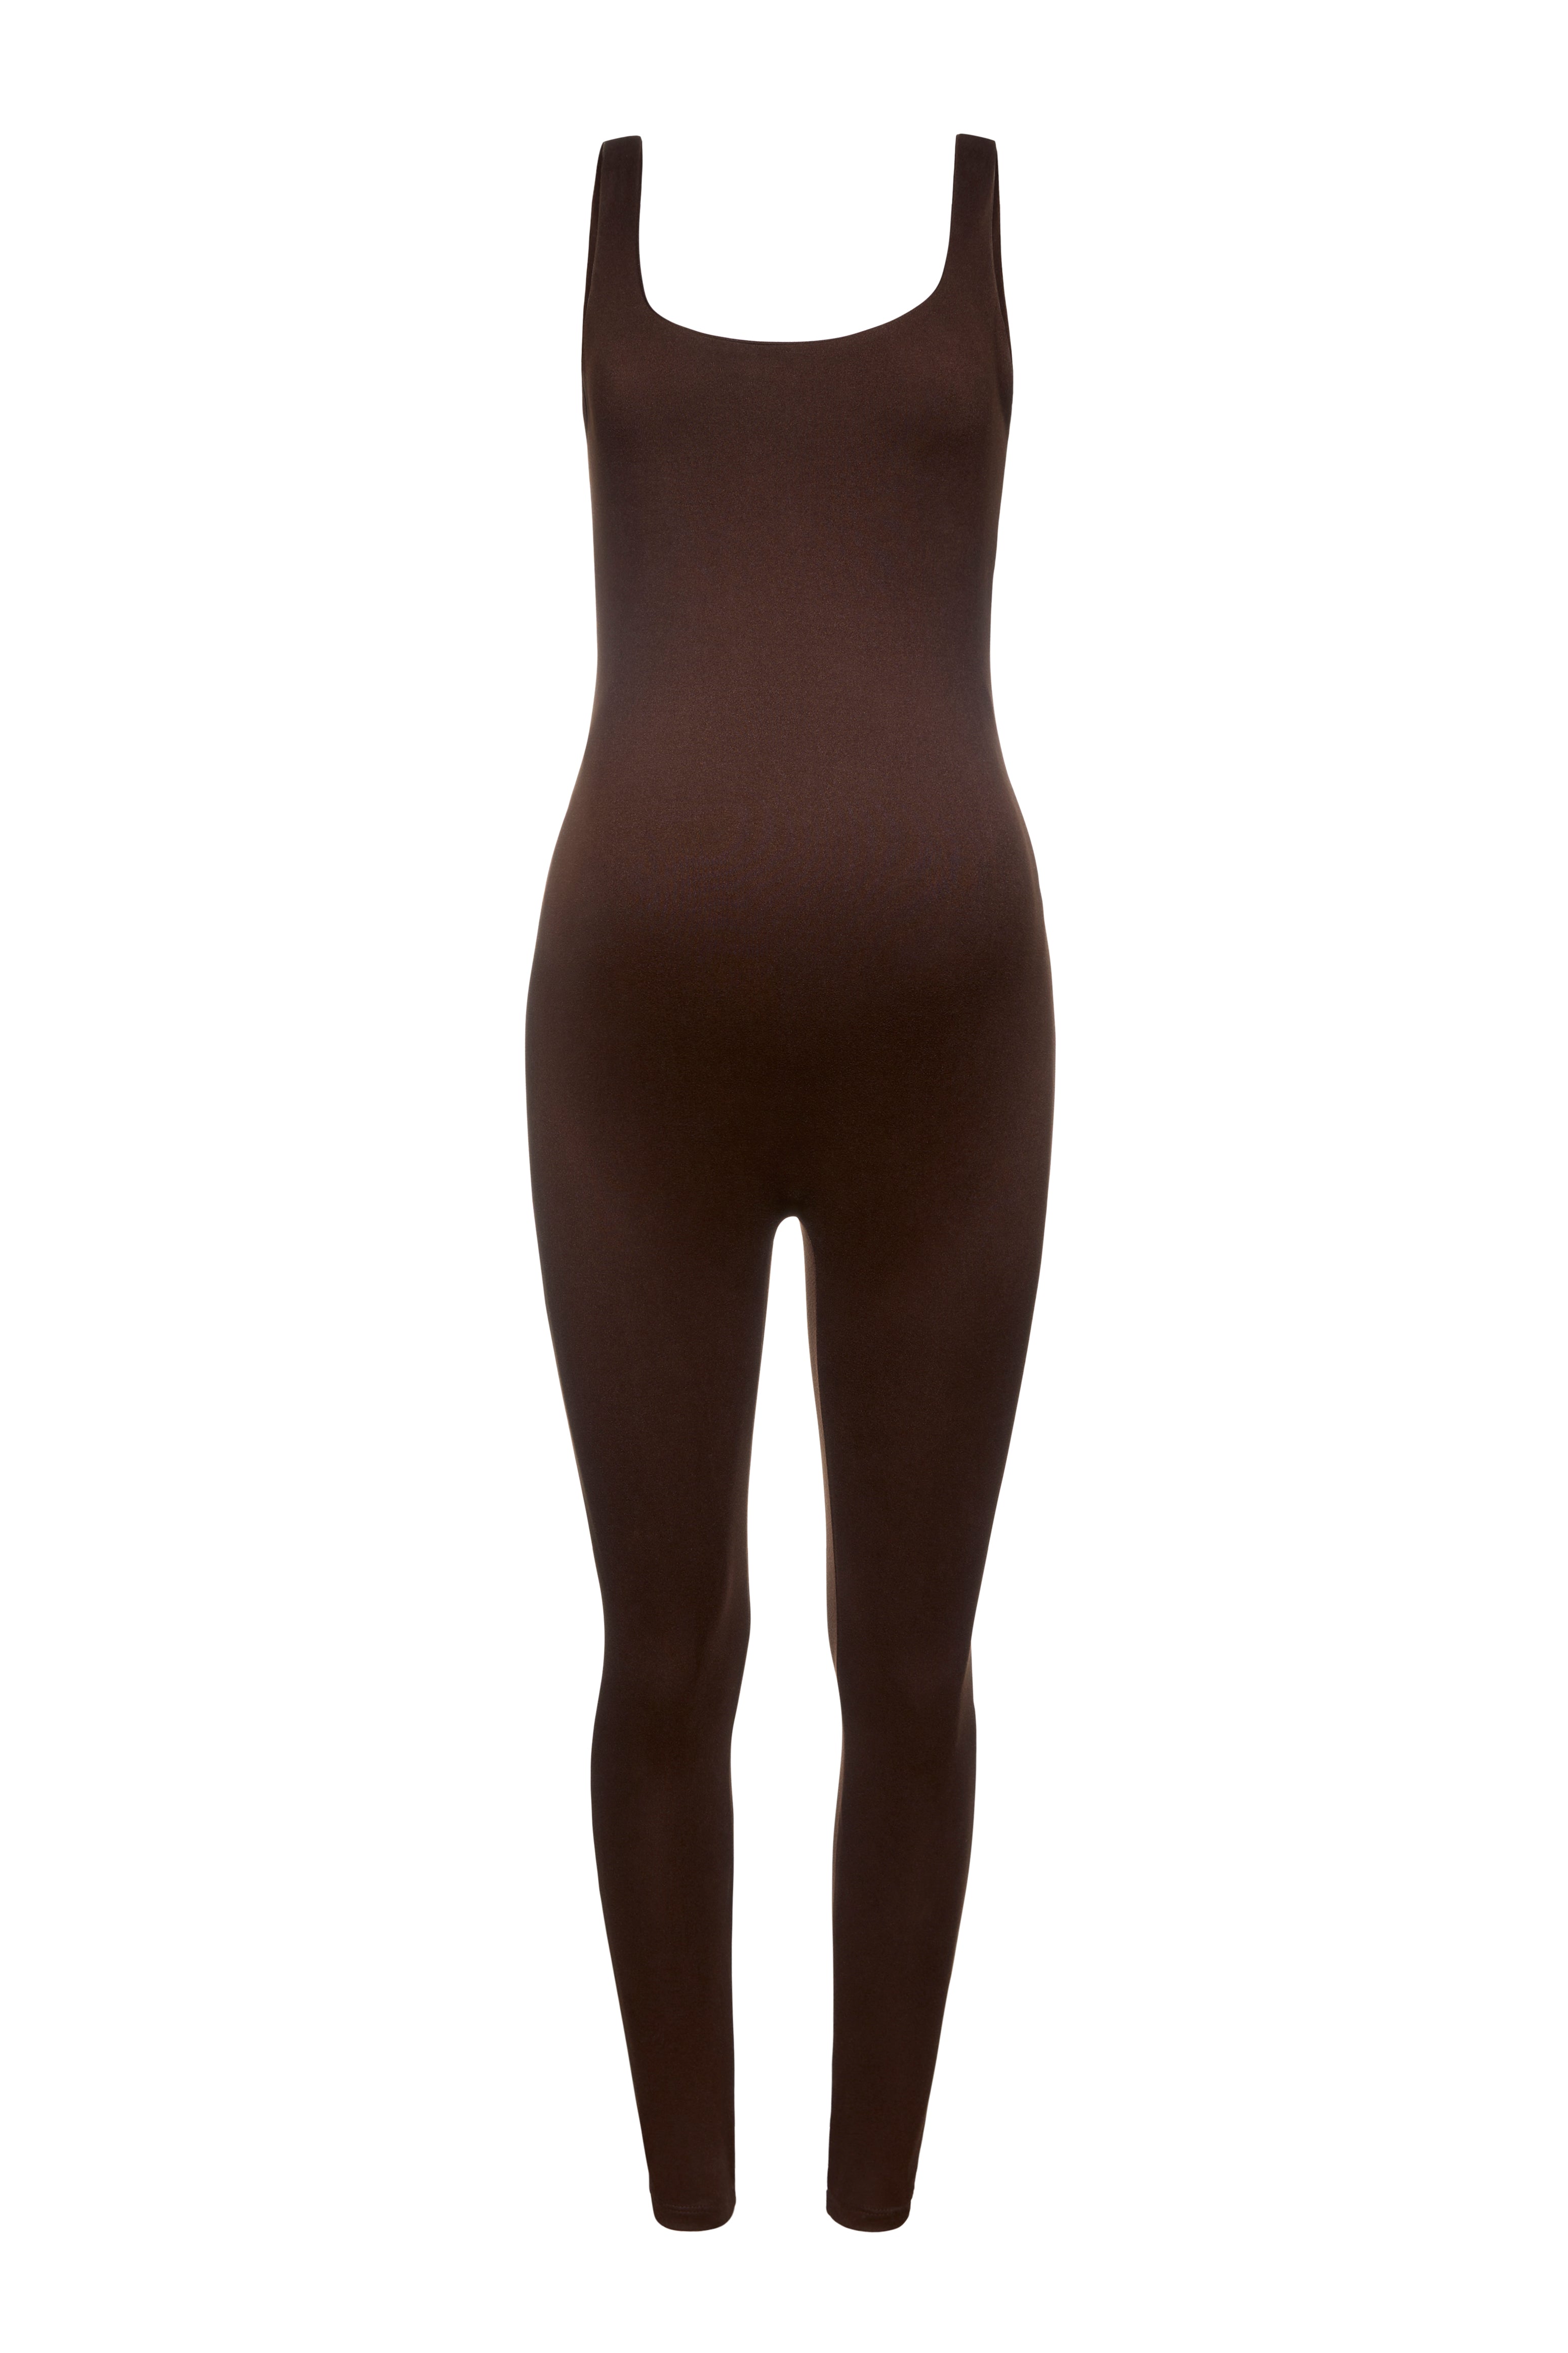 Shop The Lucy | Full Jersey Bodysuit for Maternity | Bumpsuit – BUMPSUIT